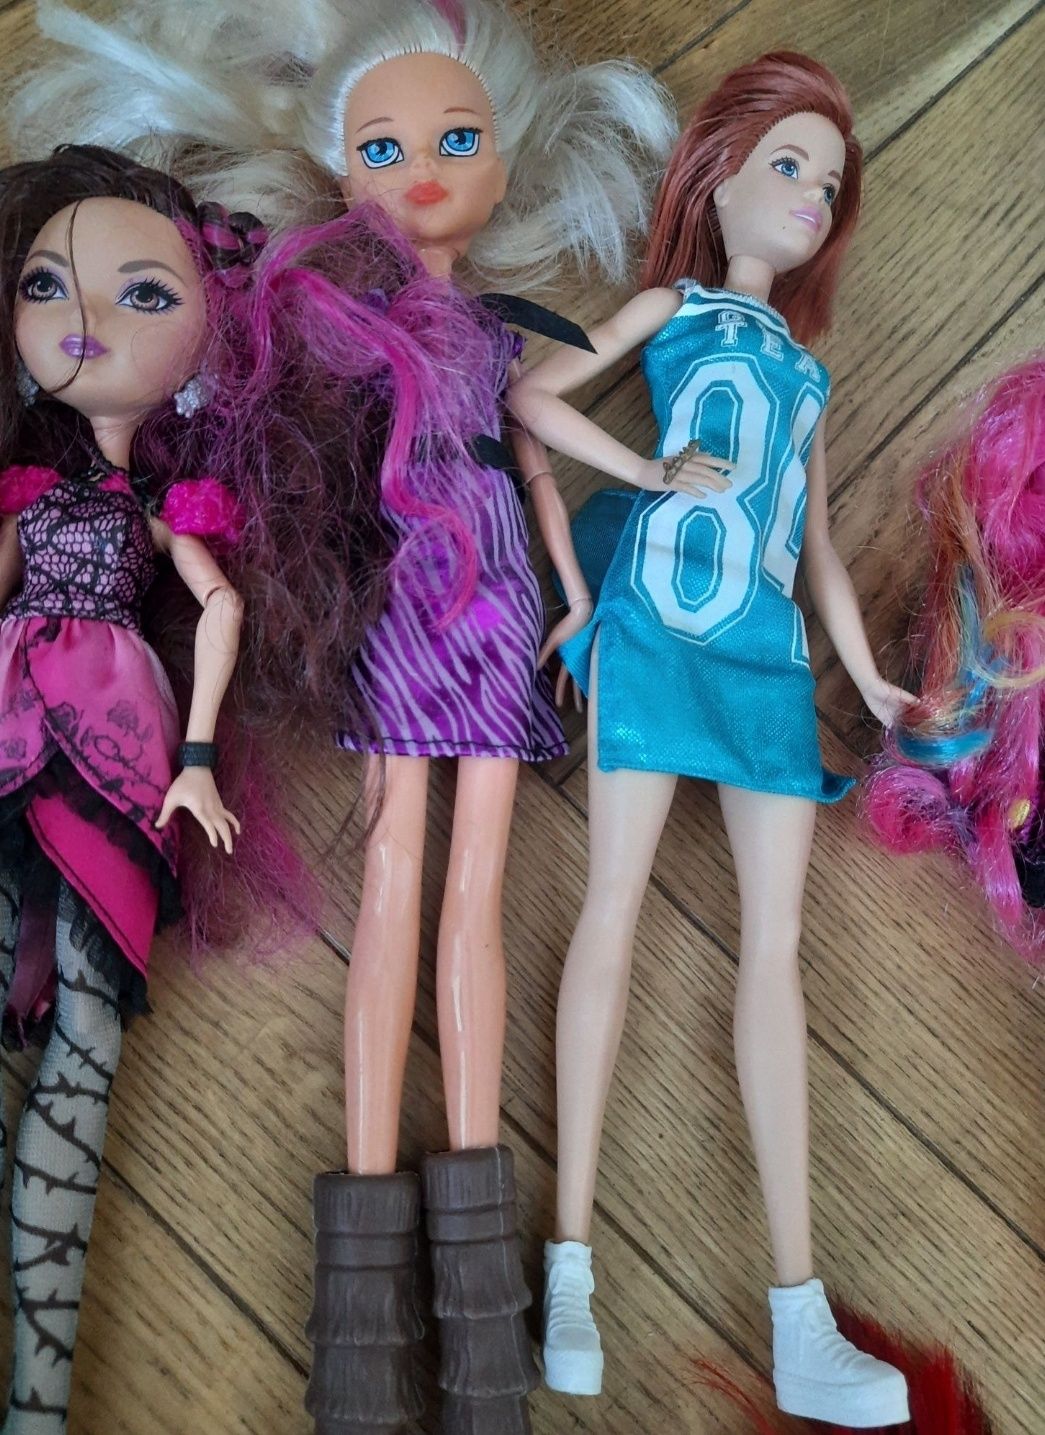 Lalki Barbie i inne